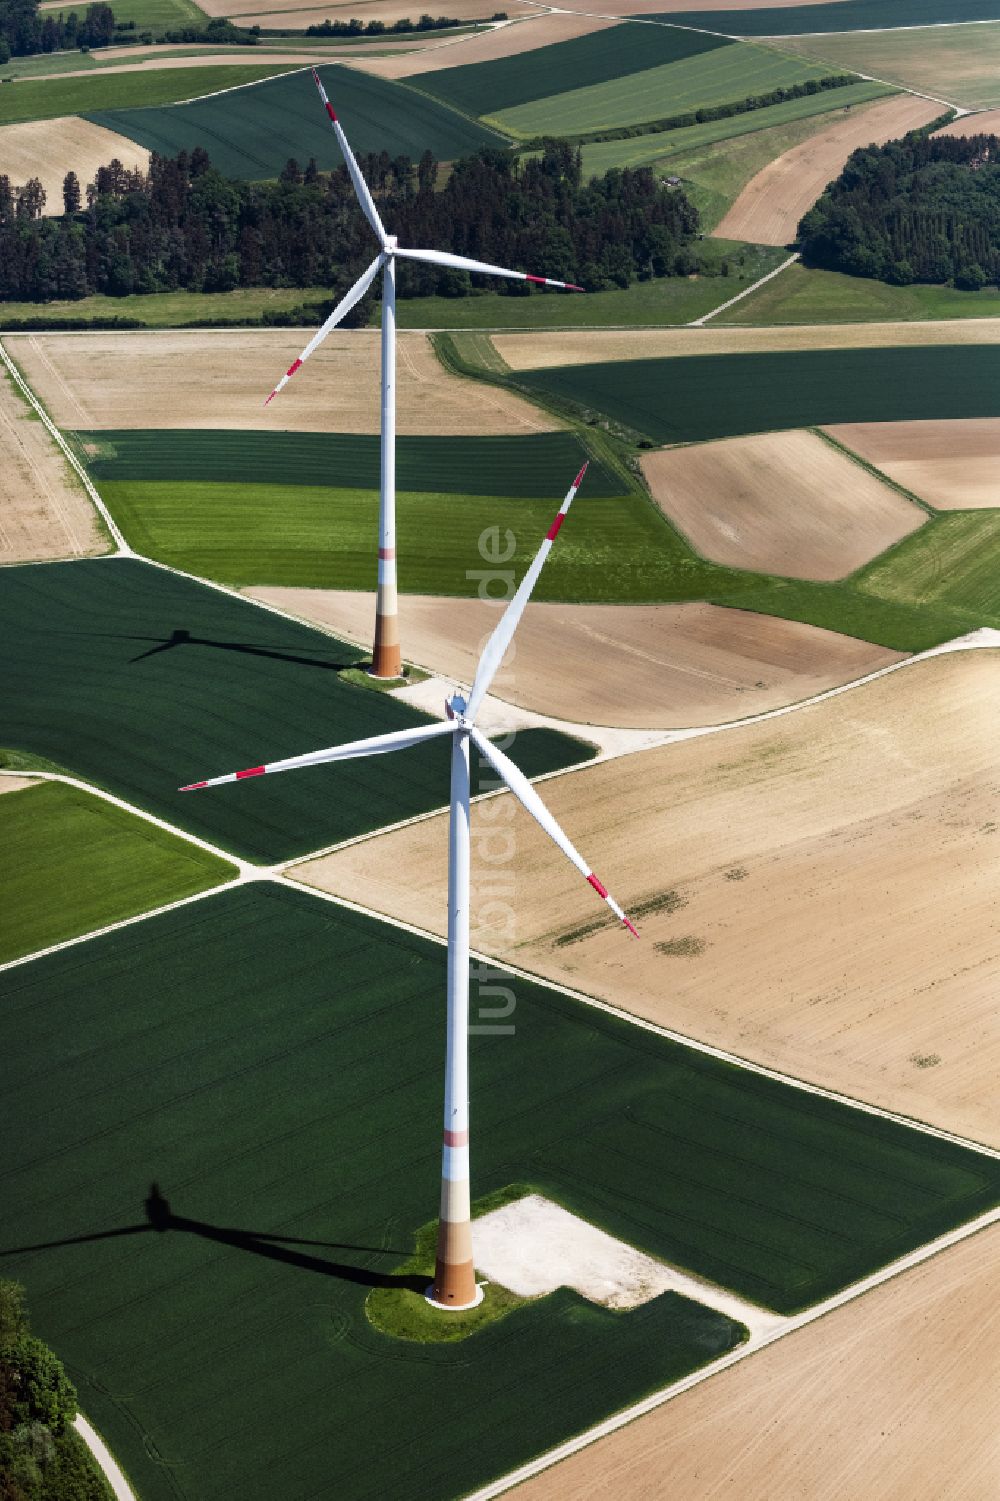 Holzheim aus der Vogelperspektive: Windenergieanlagen (WEA) auf einem Feld in Holzheim im Bundesland Bayern, Deutschland